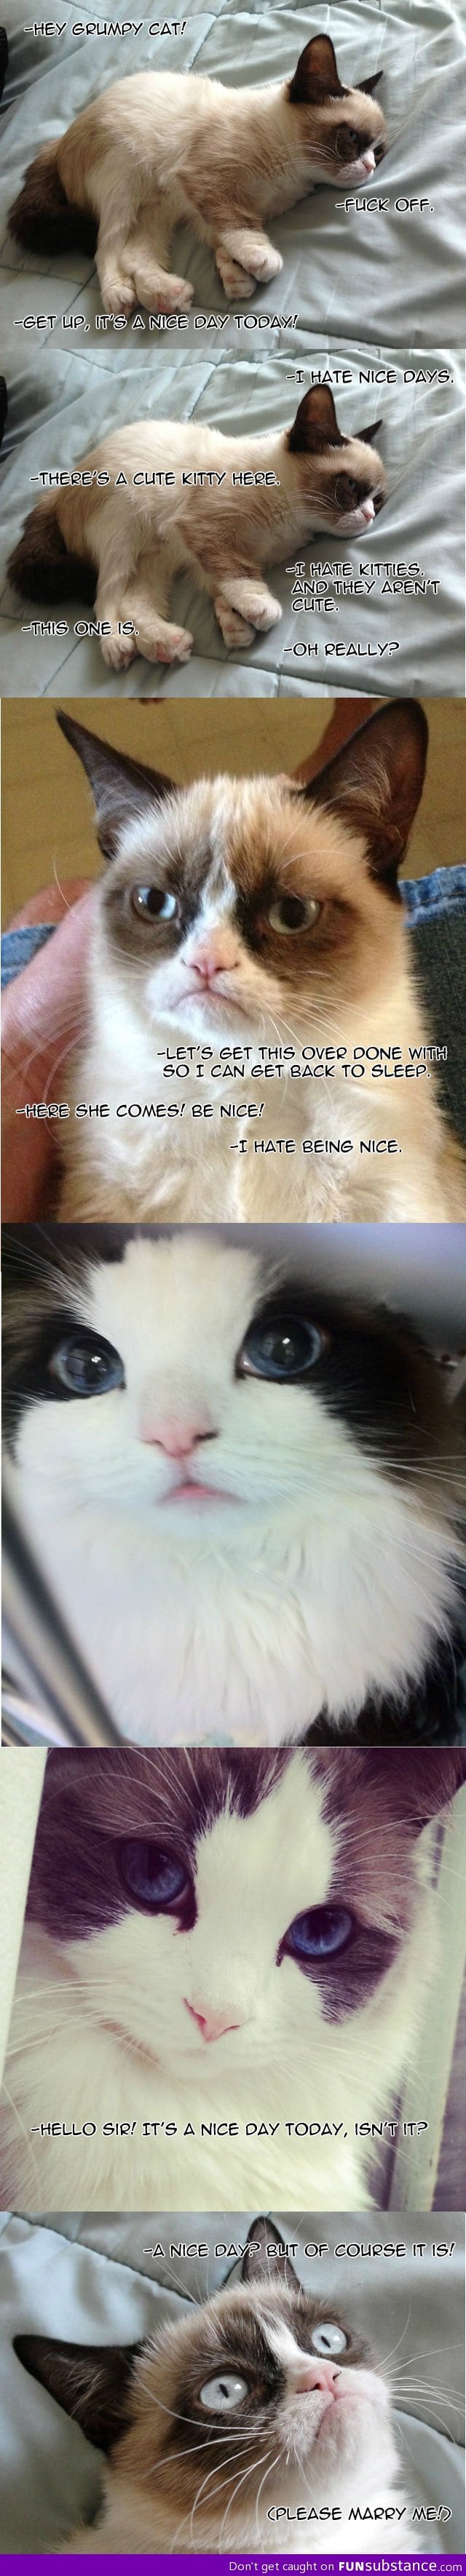 Even Grumpy Cat has been charmed